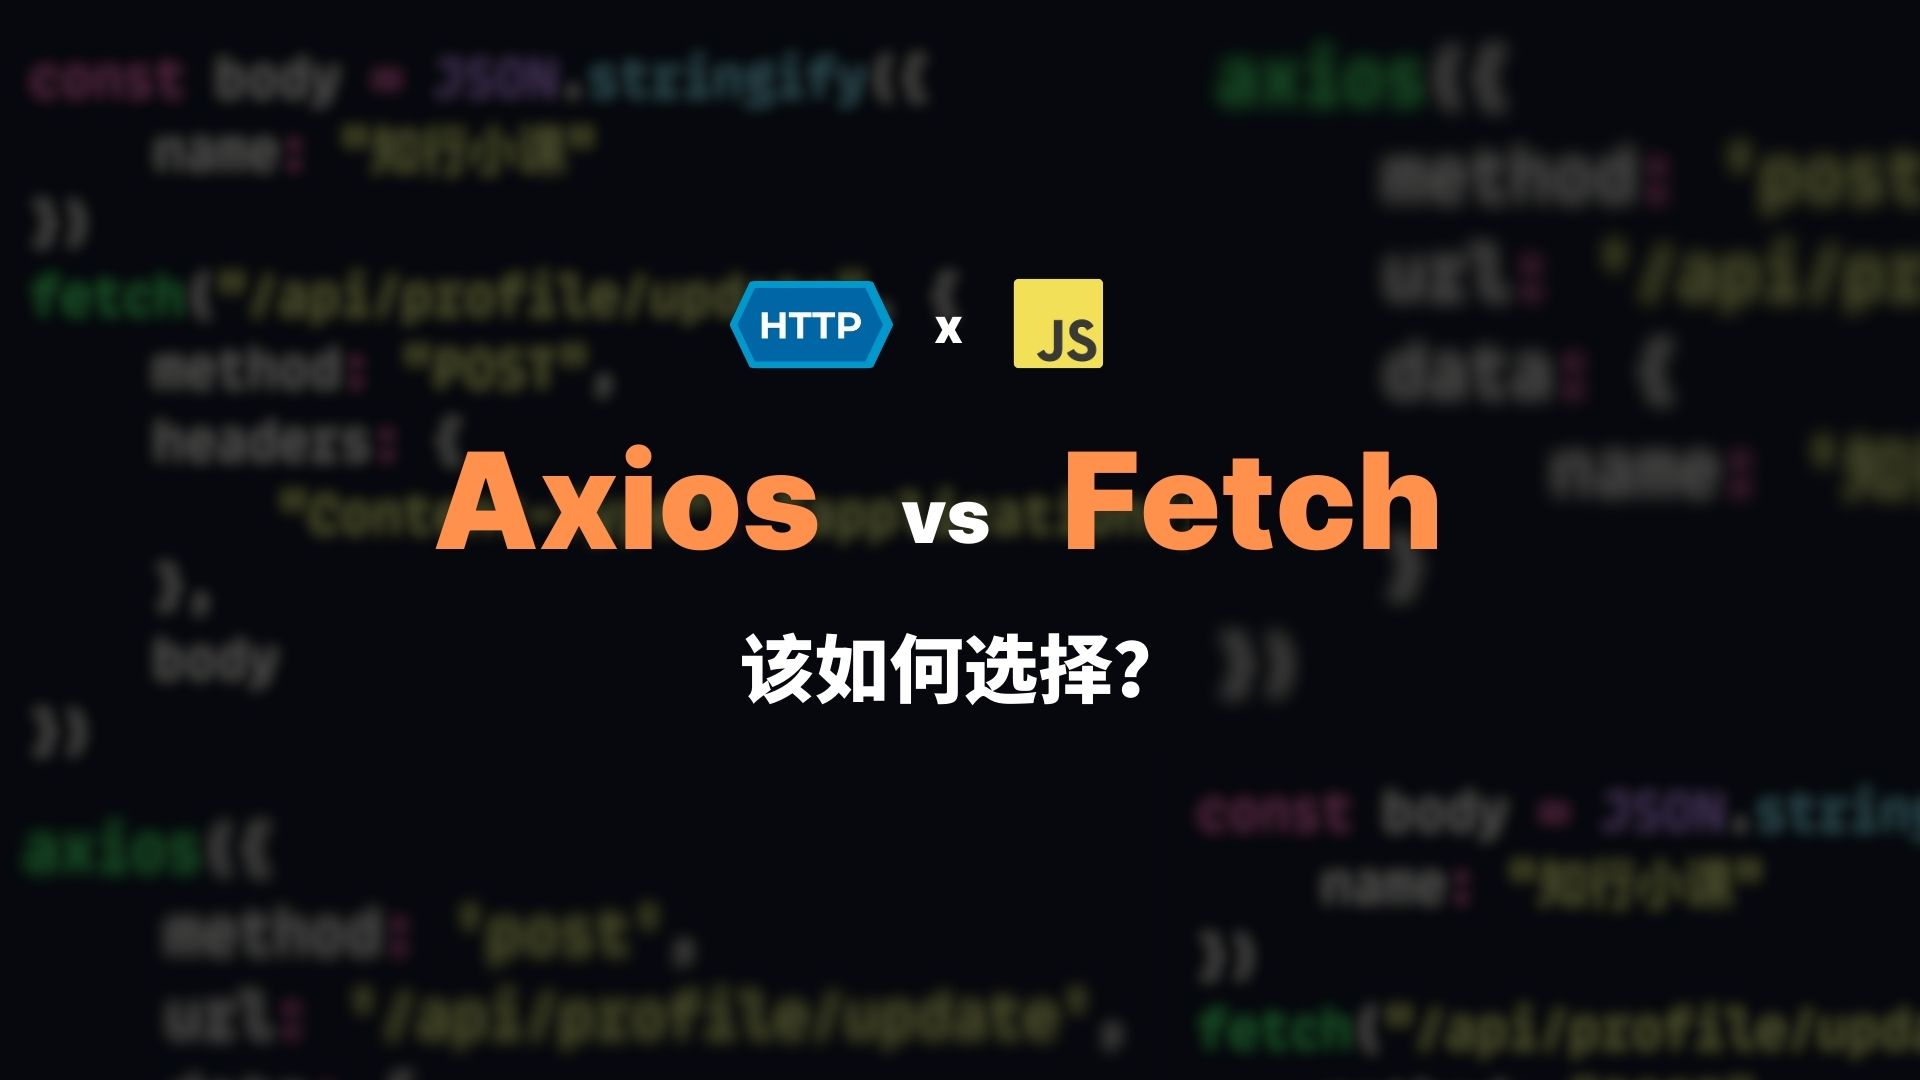 http 通信之 axios vs fecth 该如何选择？